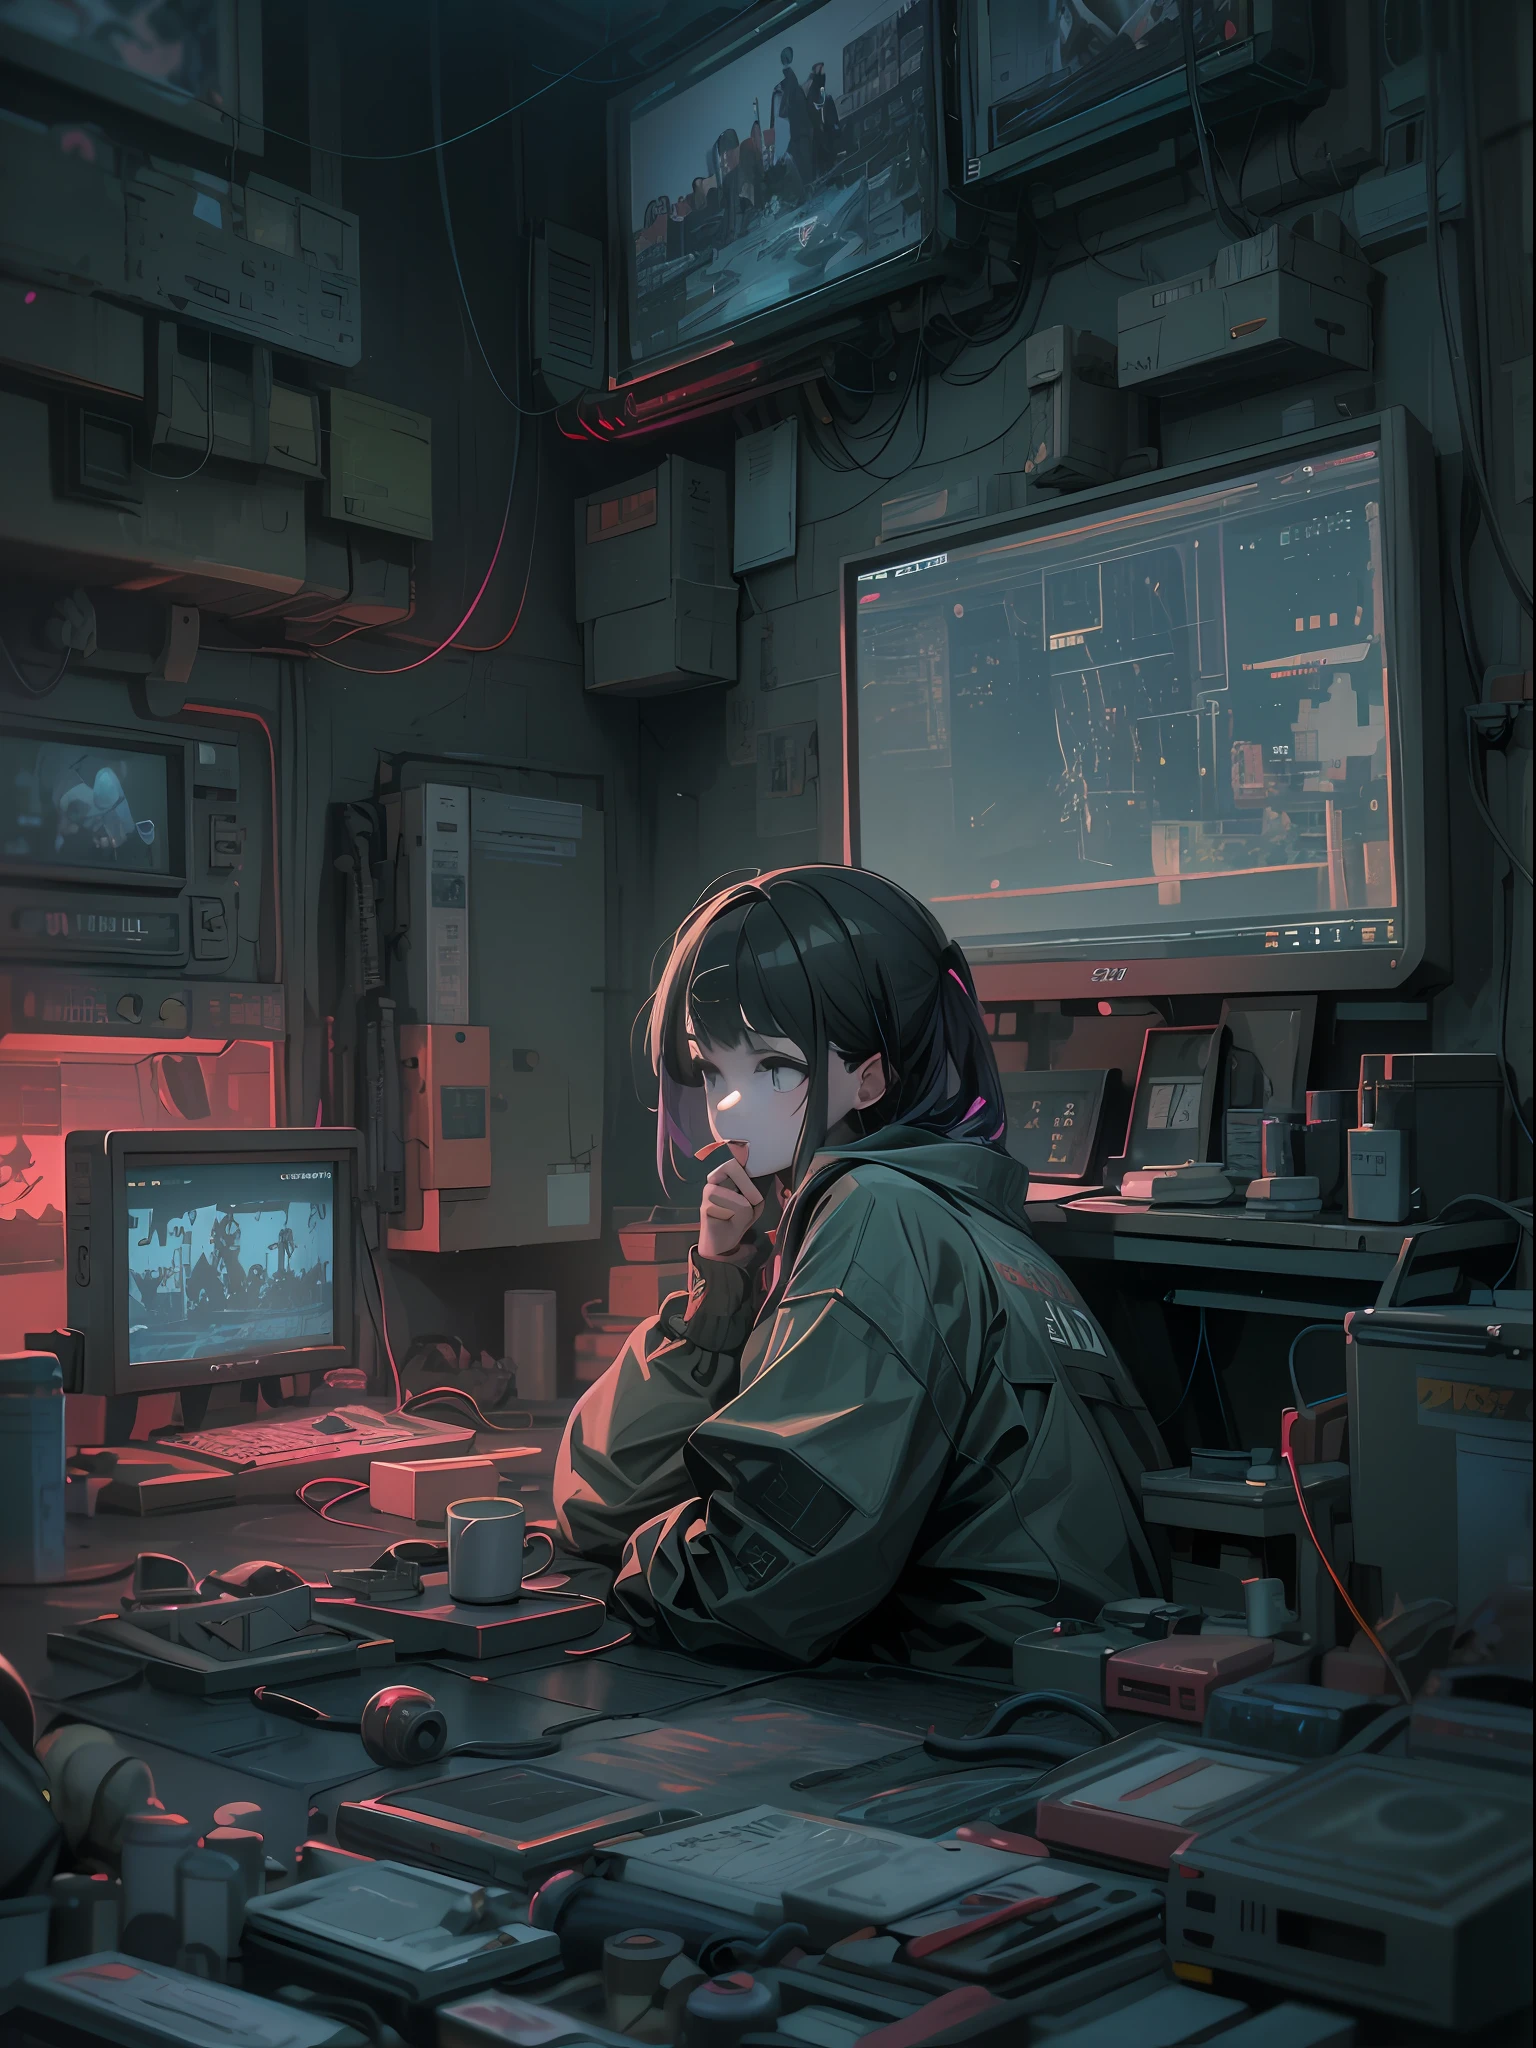 Eine Anime-Szene, in der eine Frau an einem Tisch mit viel Elektronik sitzt, Digital cyberpunk anime art, digitl cyberpunk - anime art, cyberpunk anime art, Cyberpunk art style, anime cyberpunk art, cyberpunk theme art, Kunstwerke im Guviz-Stil, cyberpunk atmosphere, cyberpunk artstyle, muted cyberpunk style, cyberpunk illustration, detaillierte Cyberpunk-Illustration, Advanced digital cyberpunk art